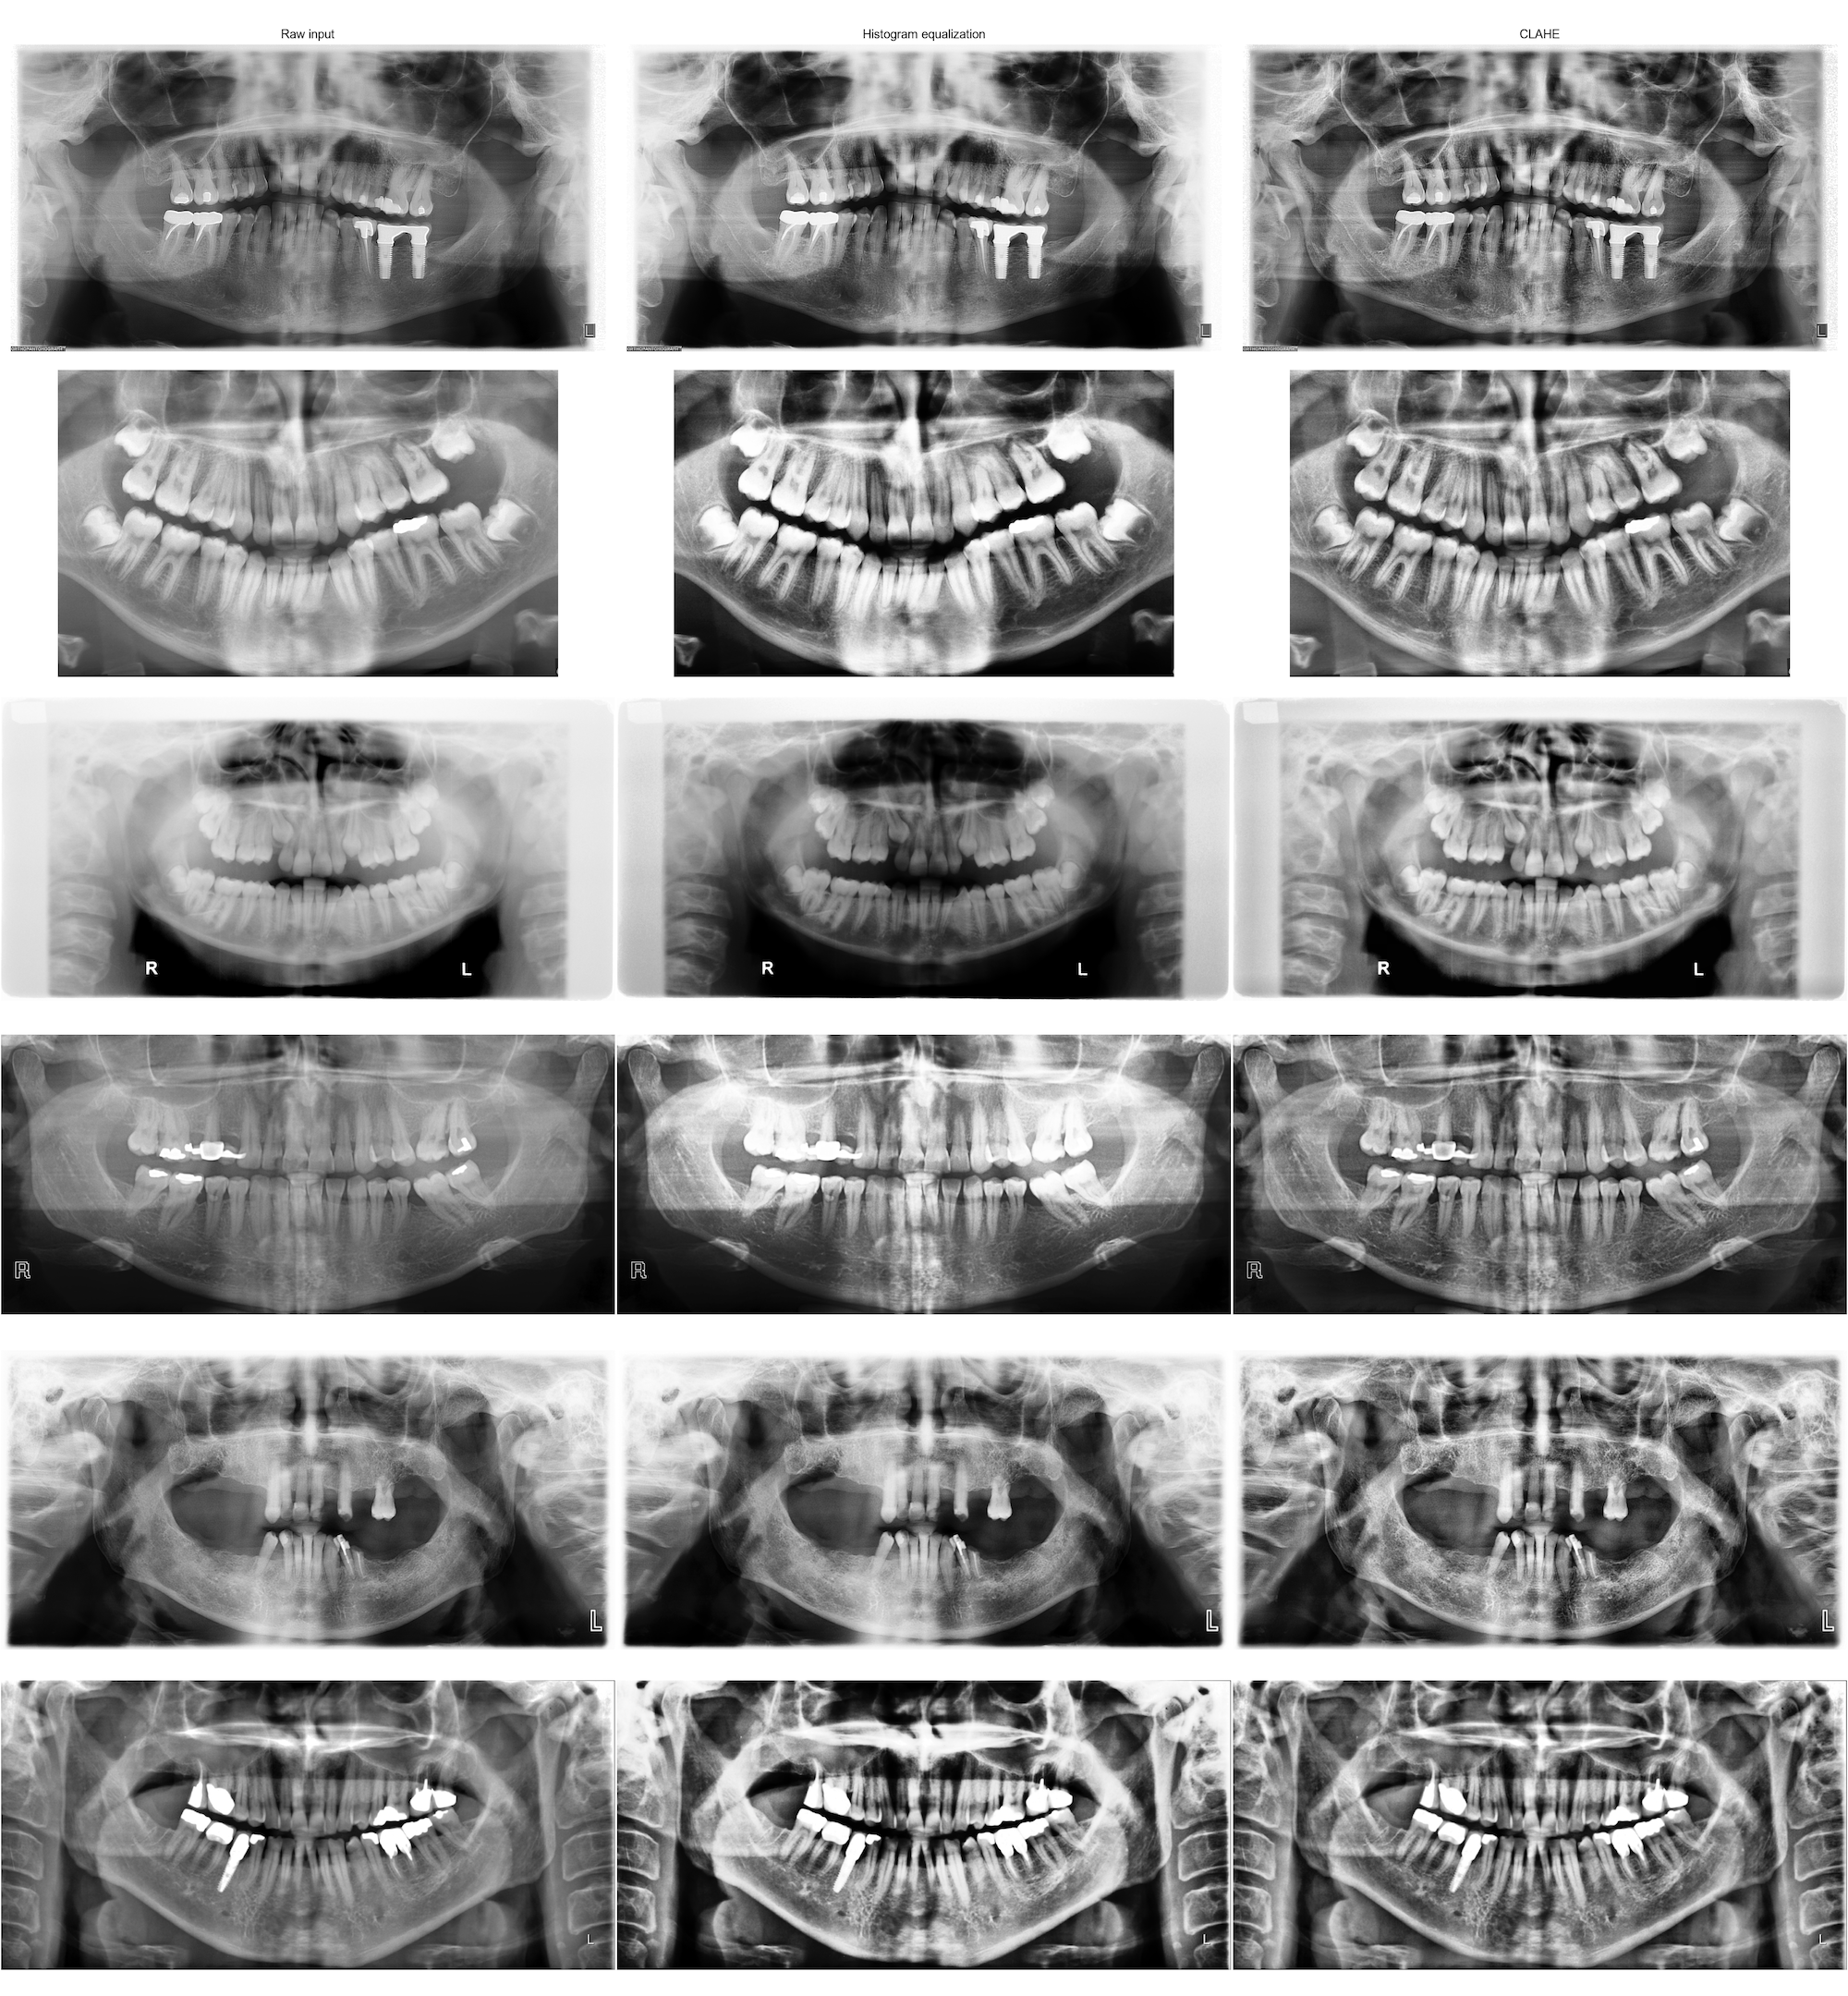 assets/images/dental/dental-2-clahe.png